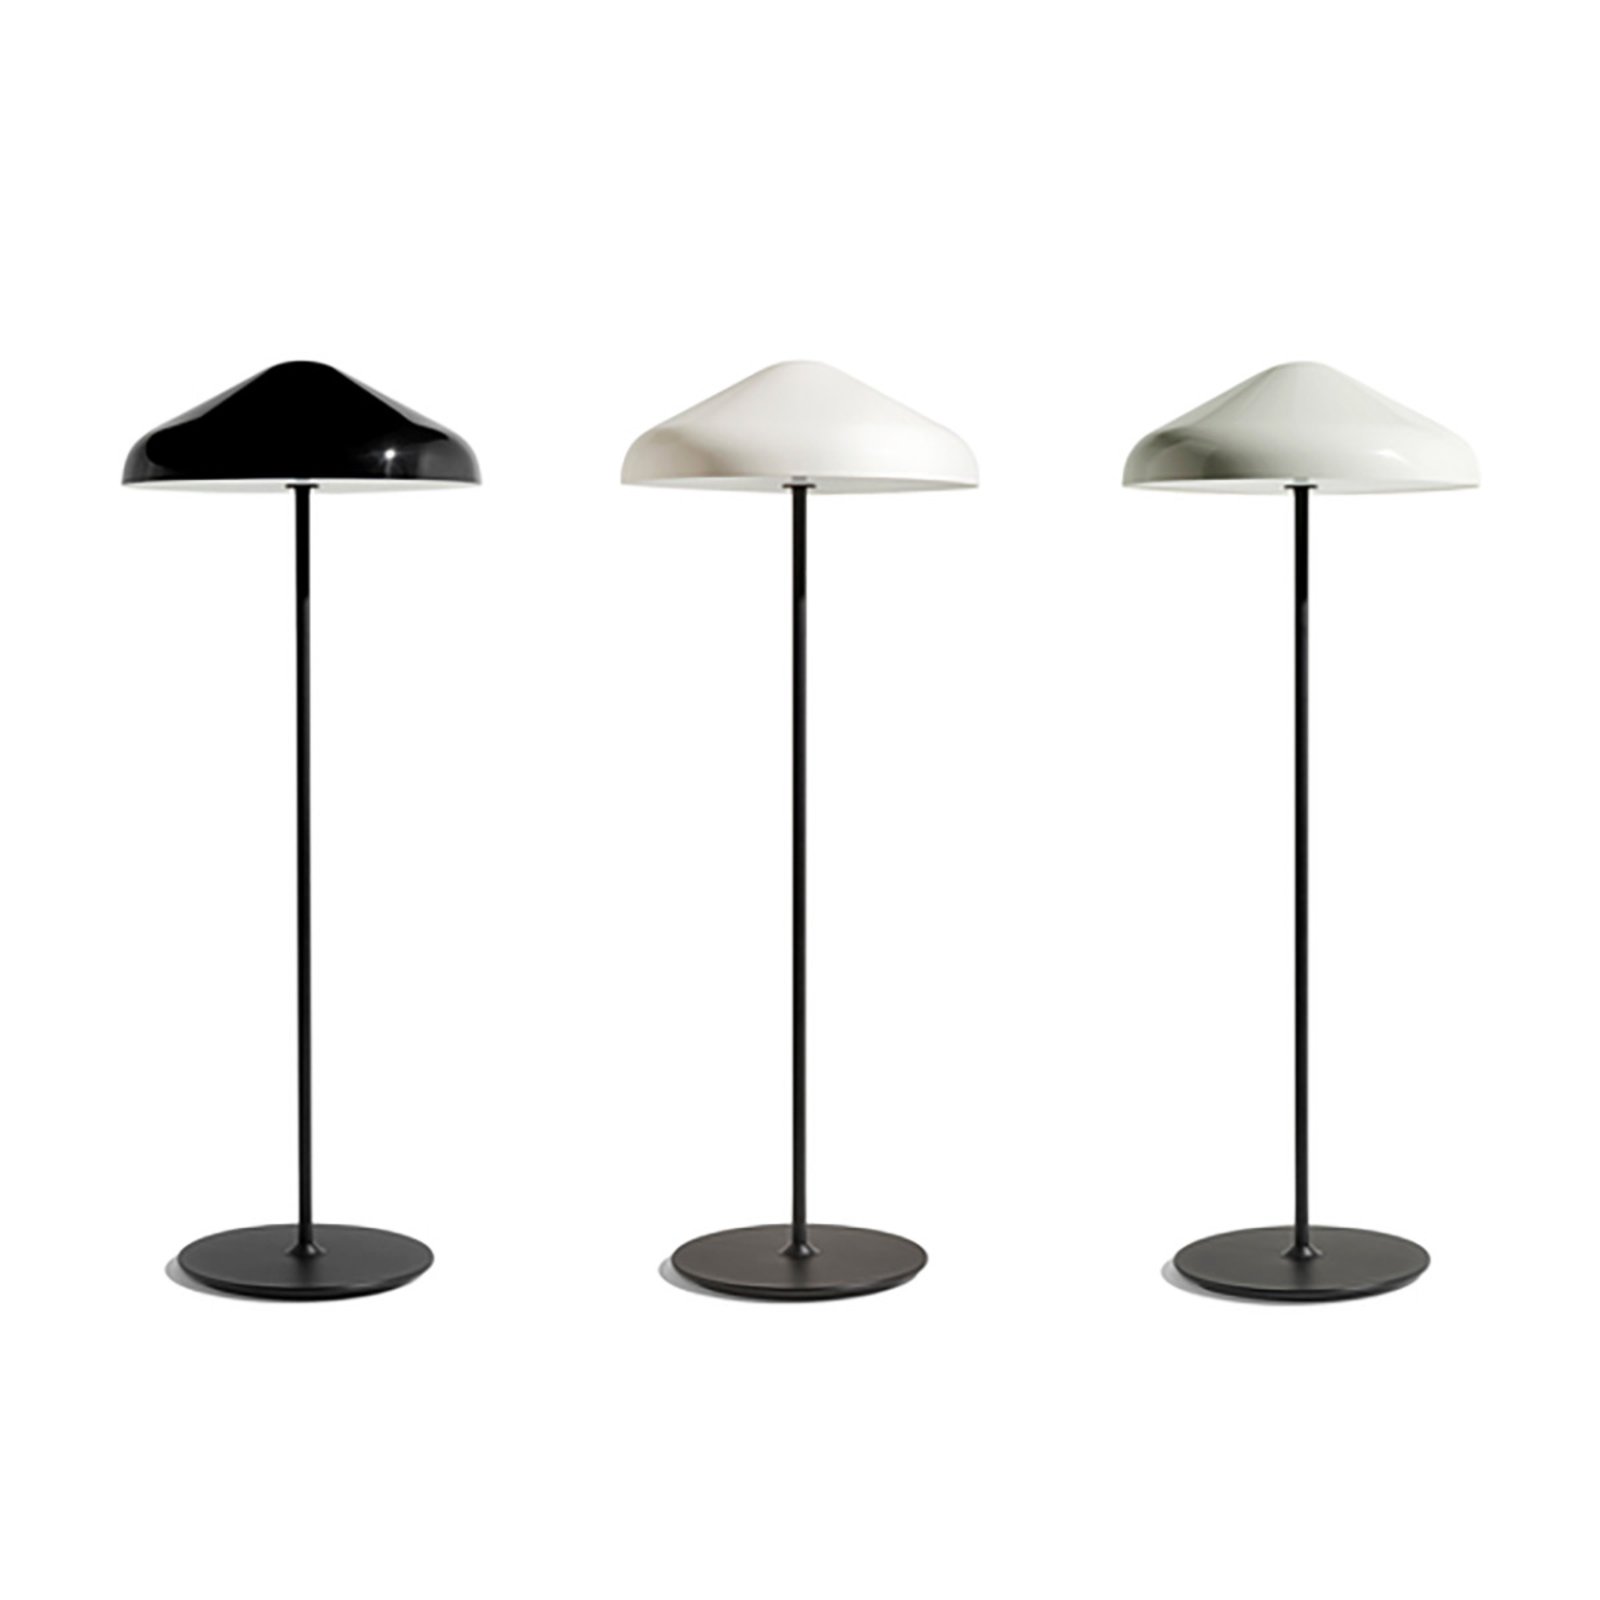 Designová stojací lampa HAY Pao, šedá